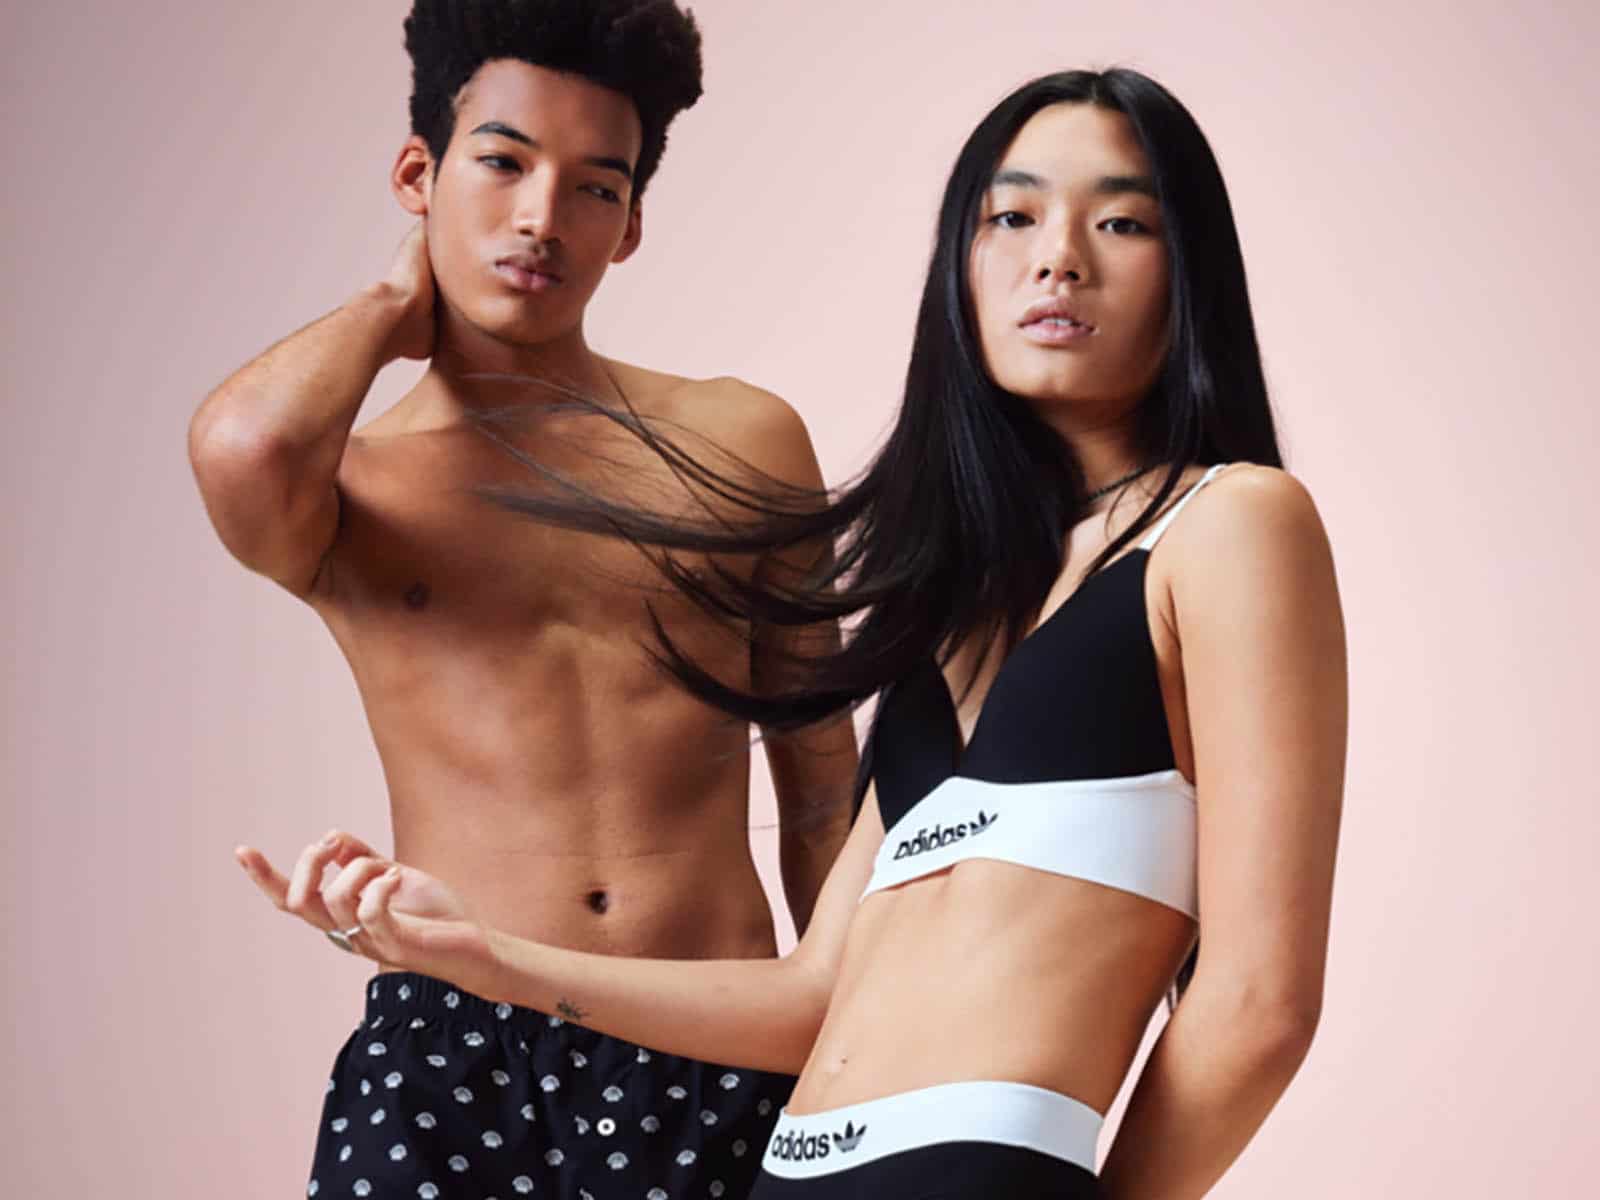 Delta Galil to manufacture Adidas brand underwear - Globes